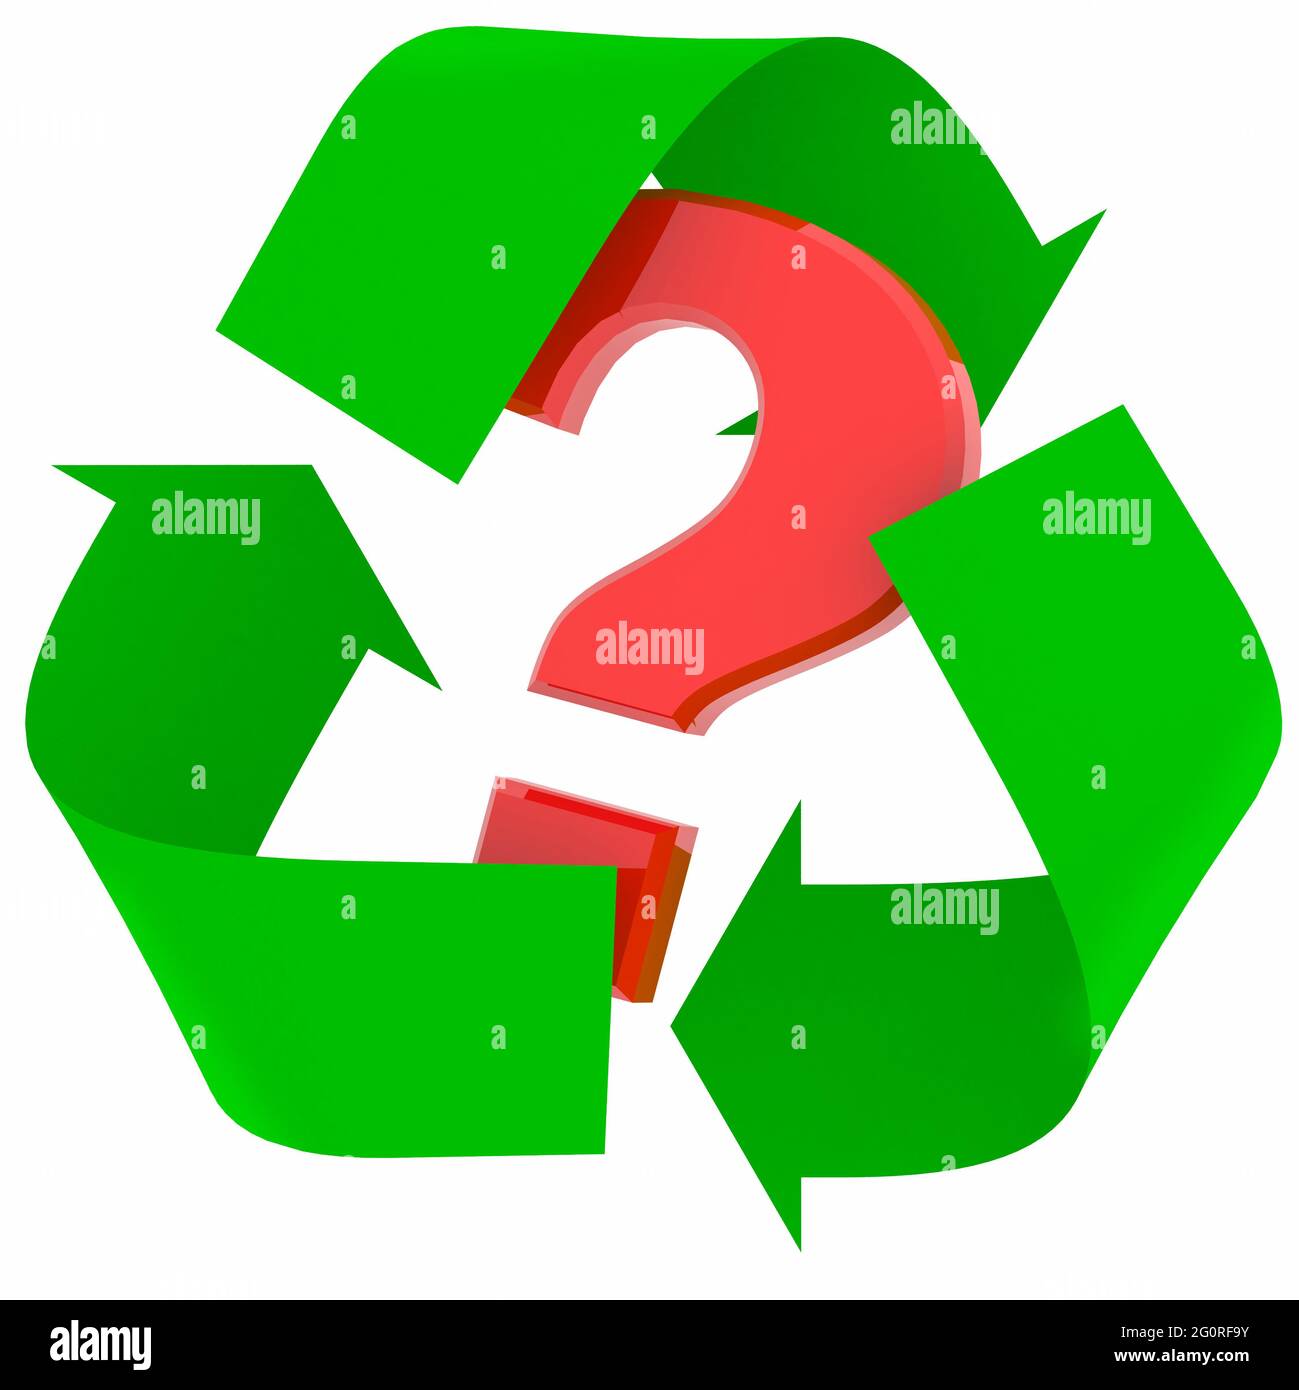 simbolo di riciclo verde con punto interrogativo rosso all'interno, illustrazione 3d Foto Stock